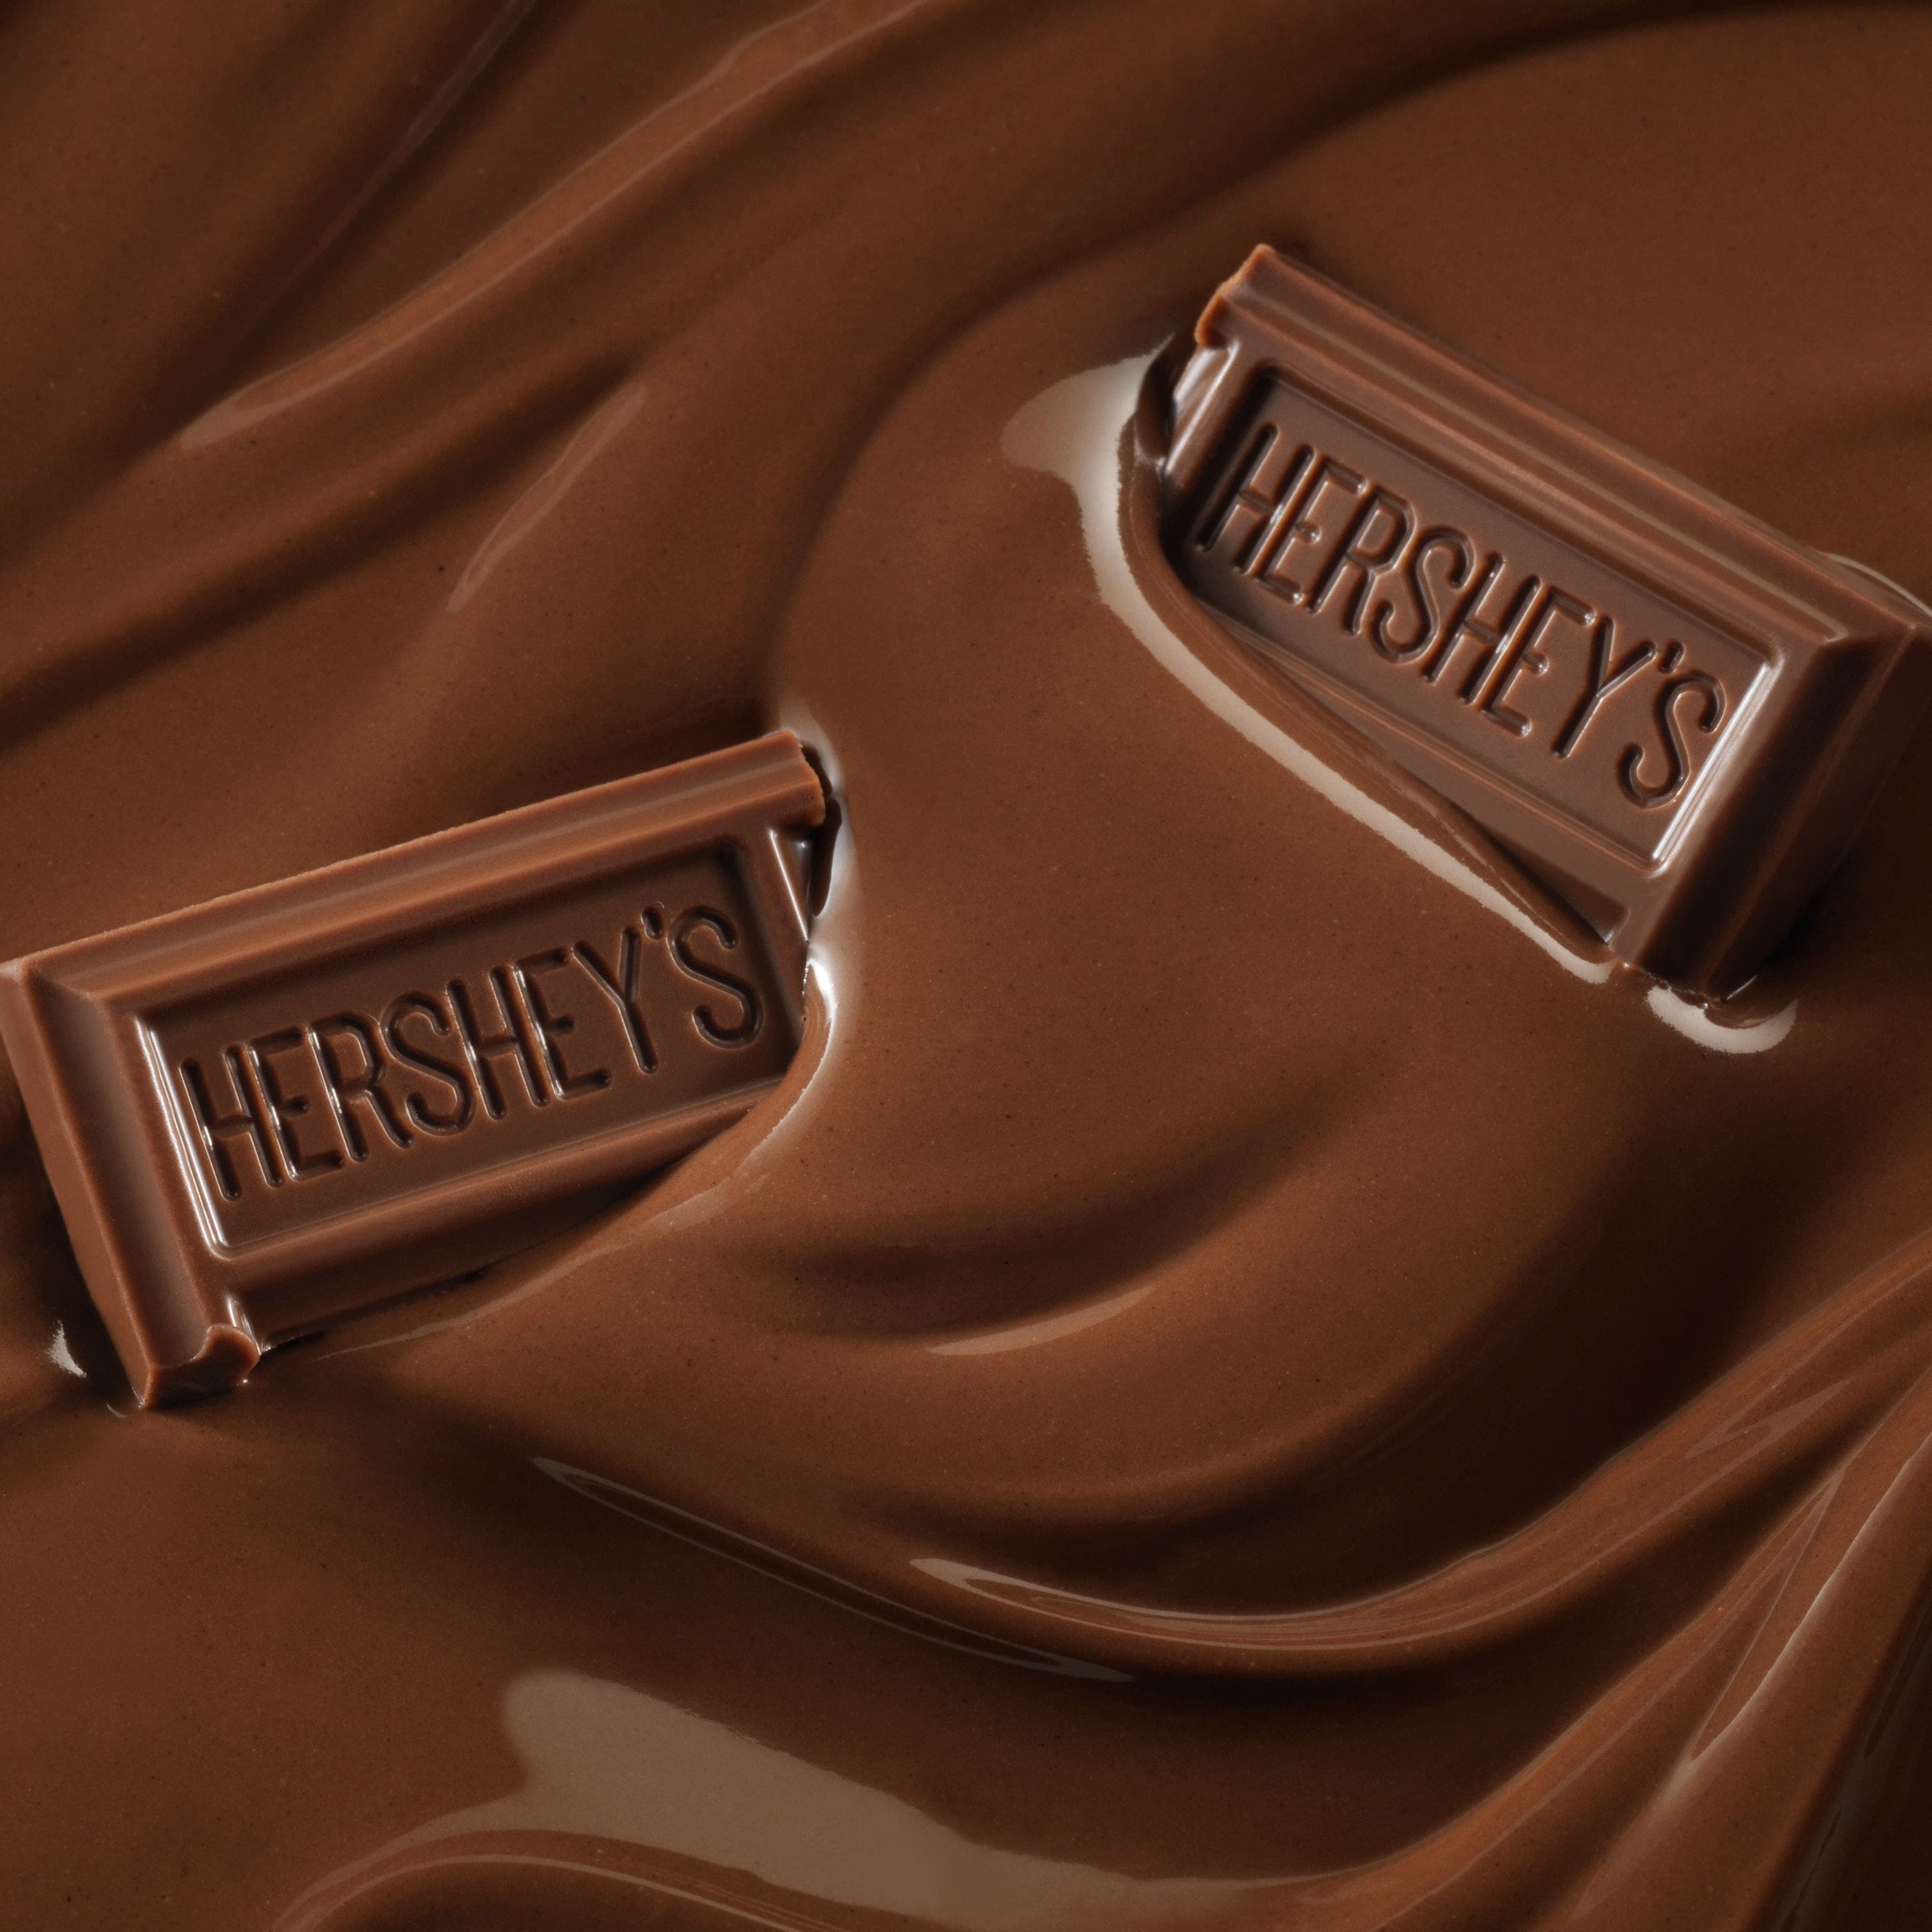 Dois pedaços de chocolate Hershey's em cima de um creme de Hershey's ao leite.